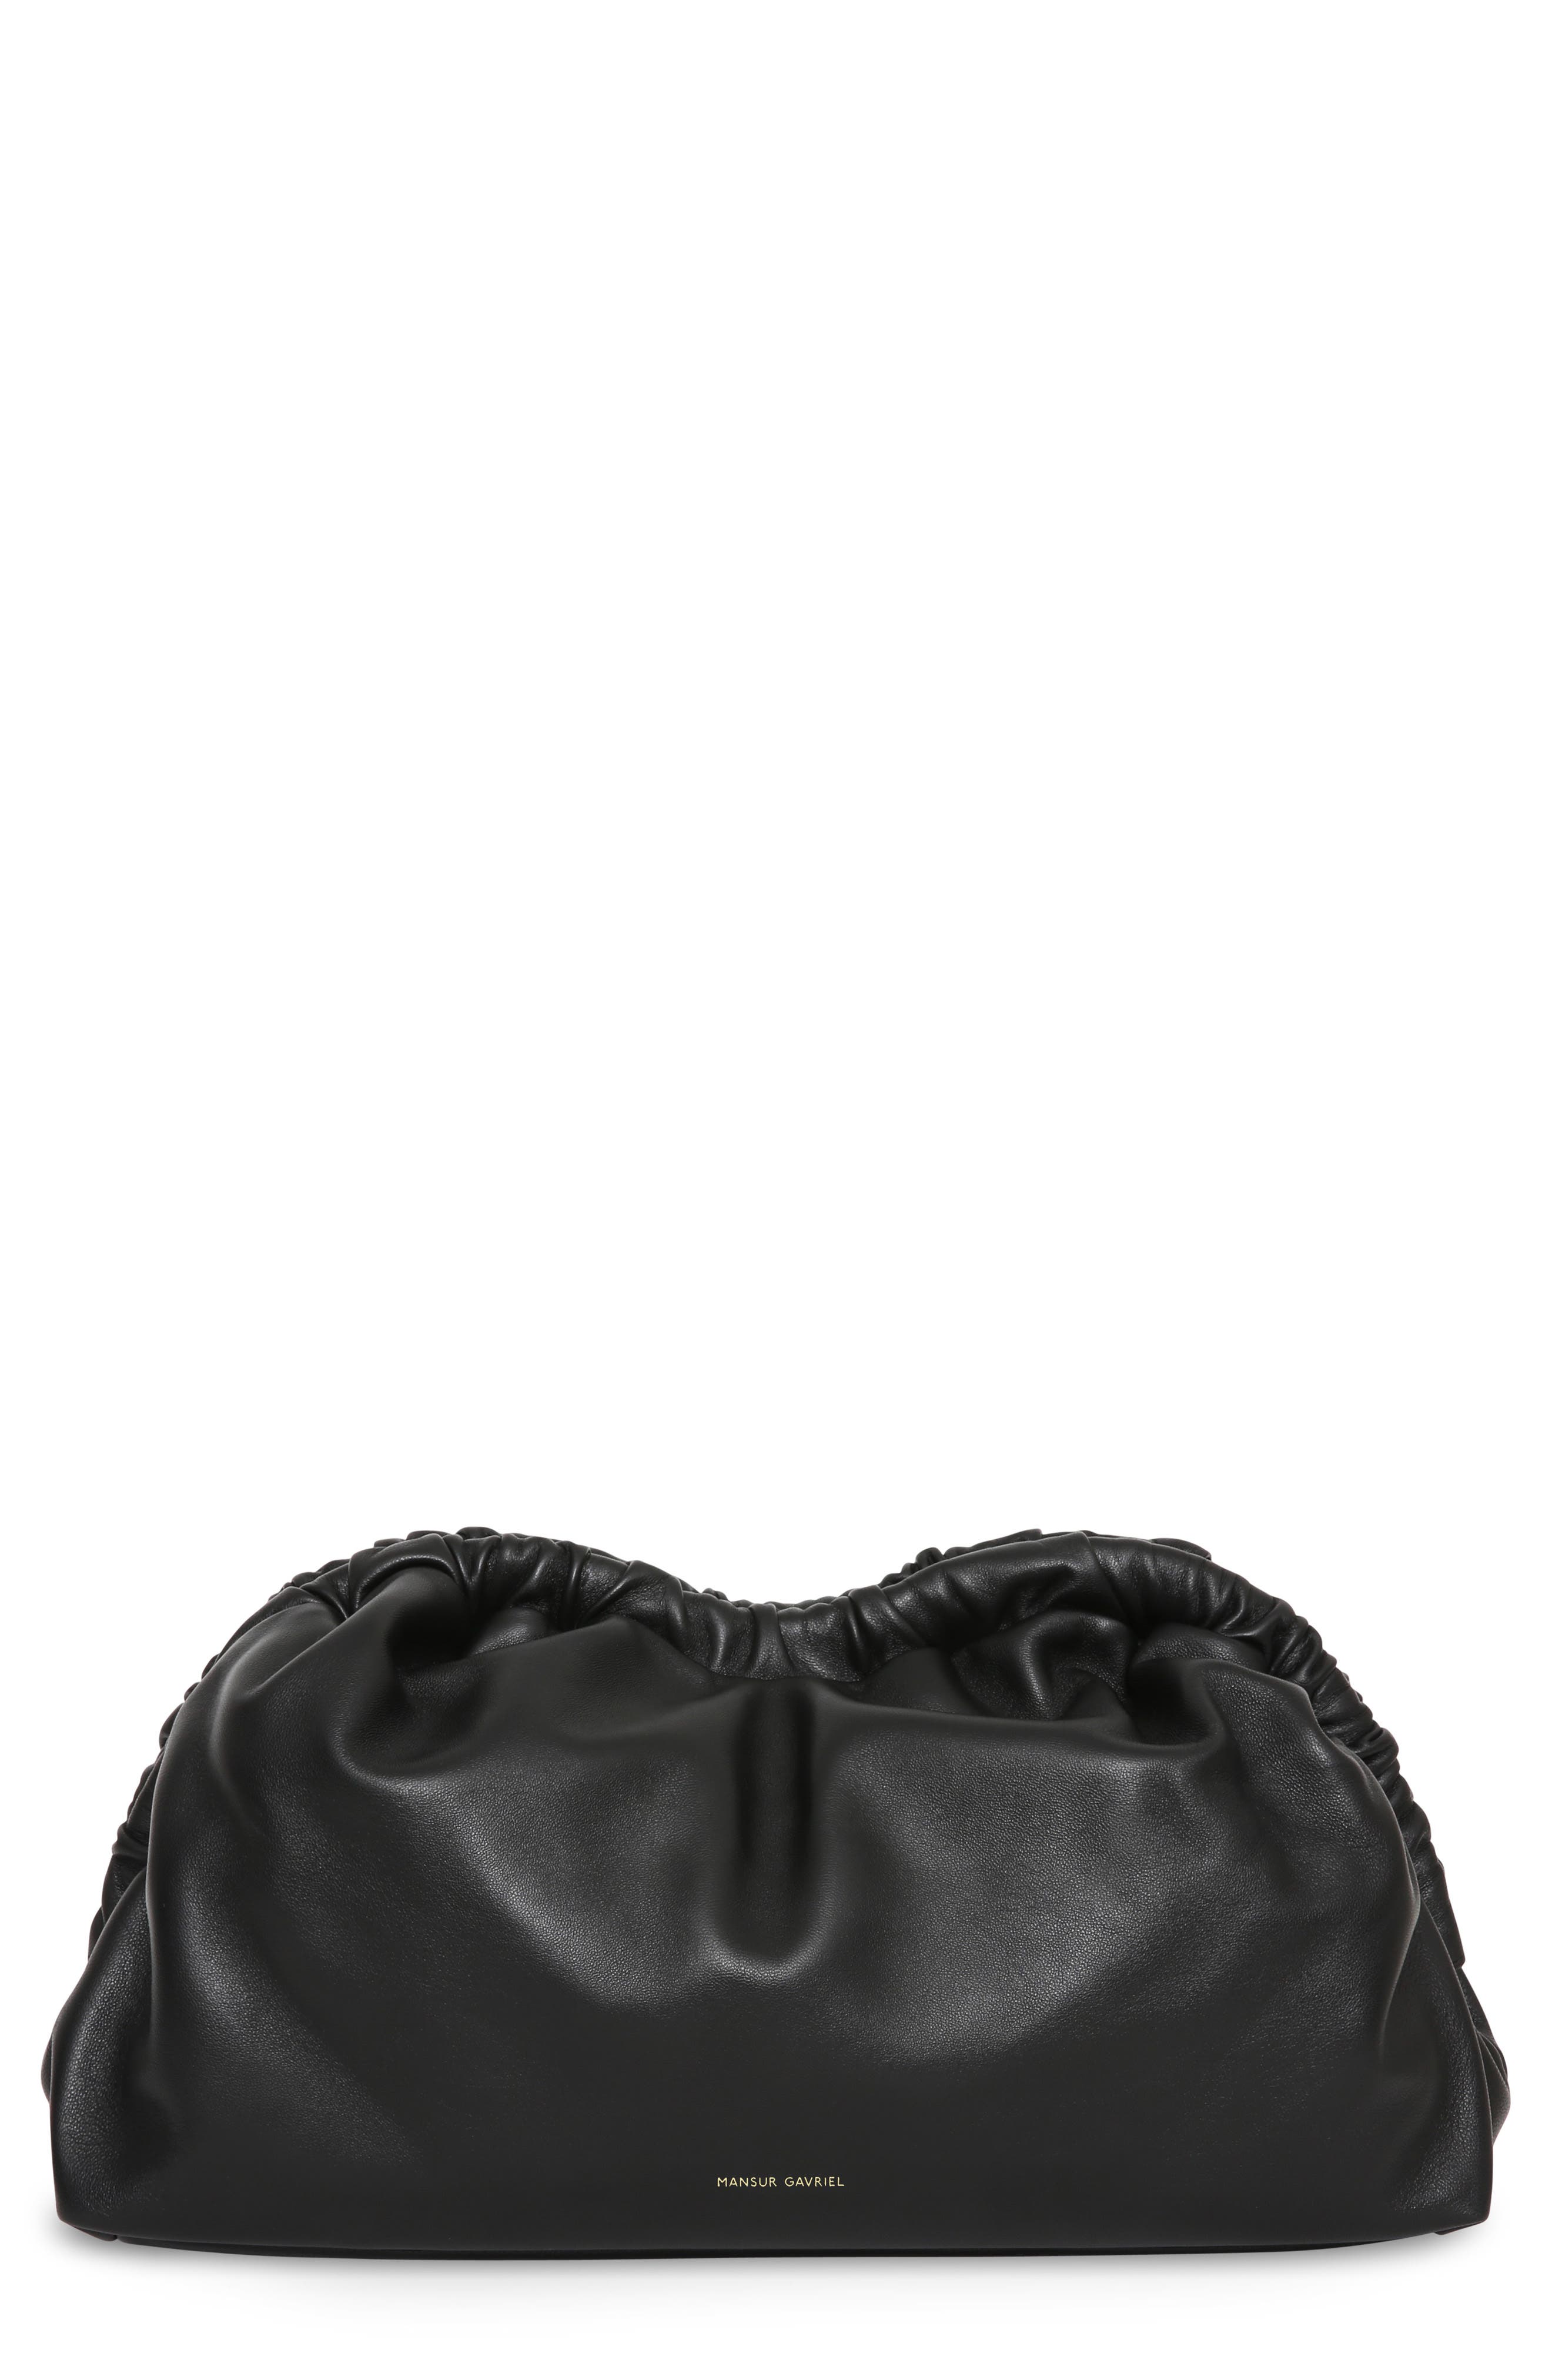 kyrie bag black